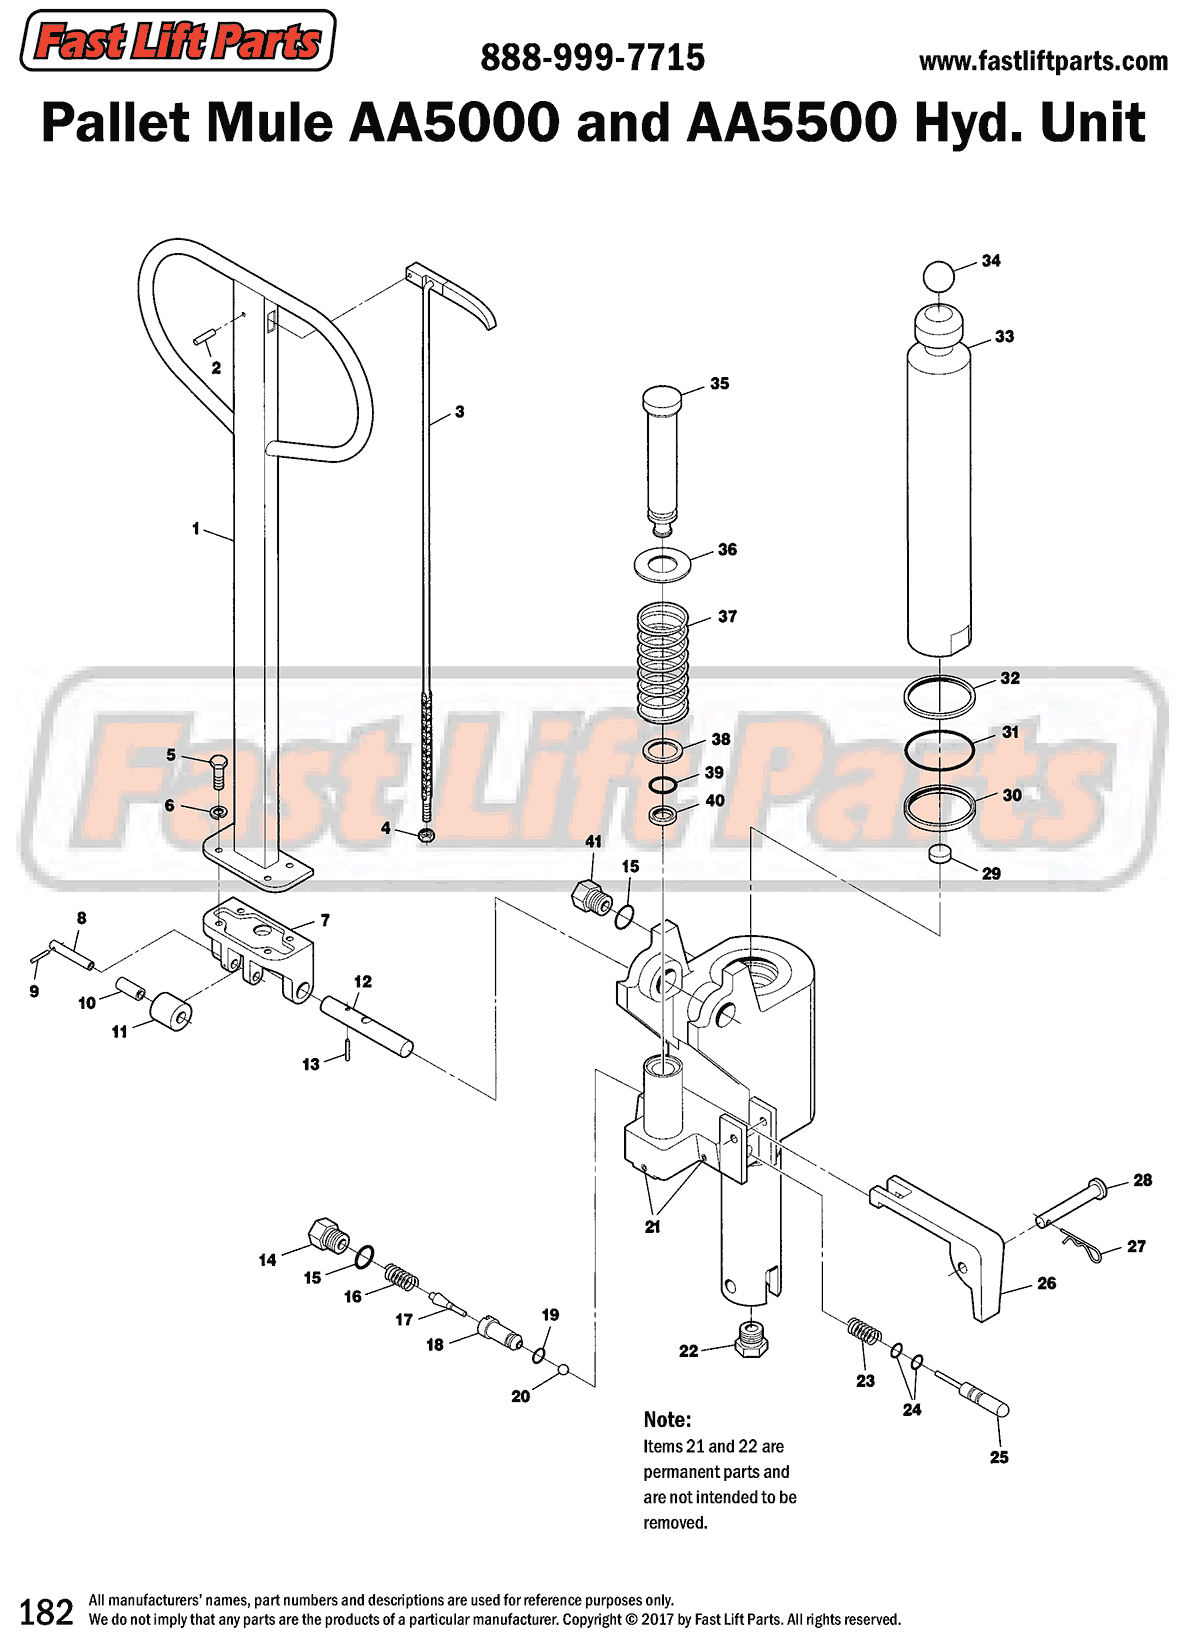 Pallet Mule AA5000 & AA5500 Hydraulic Unit Line Drawing